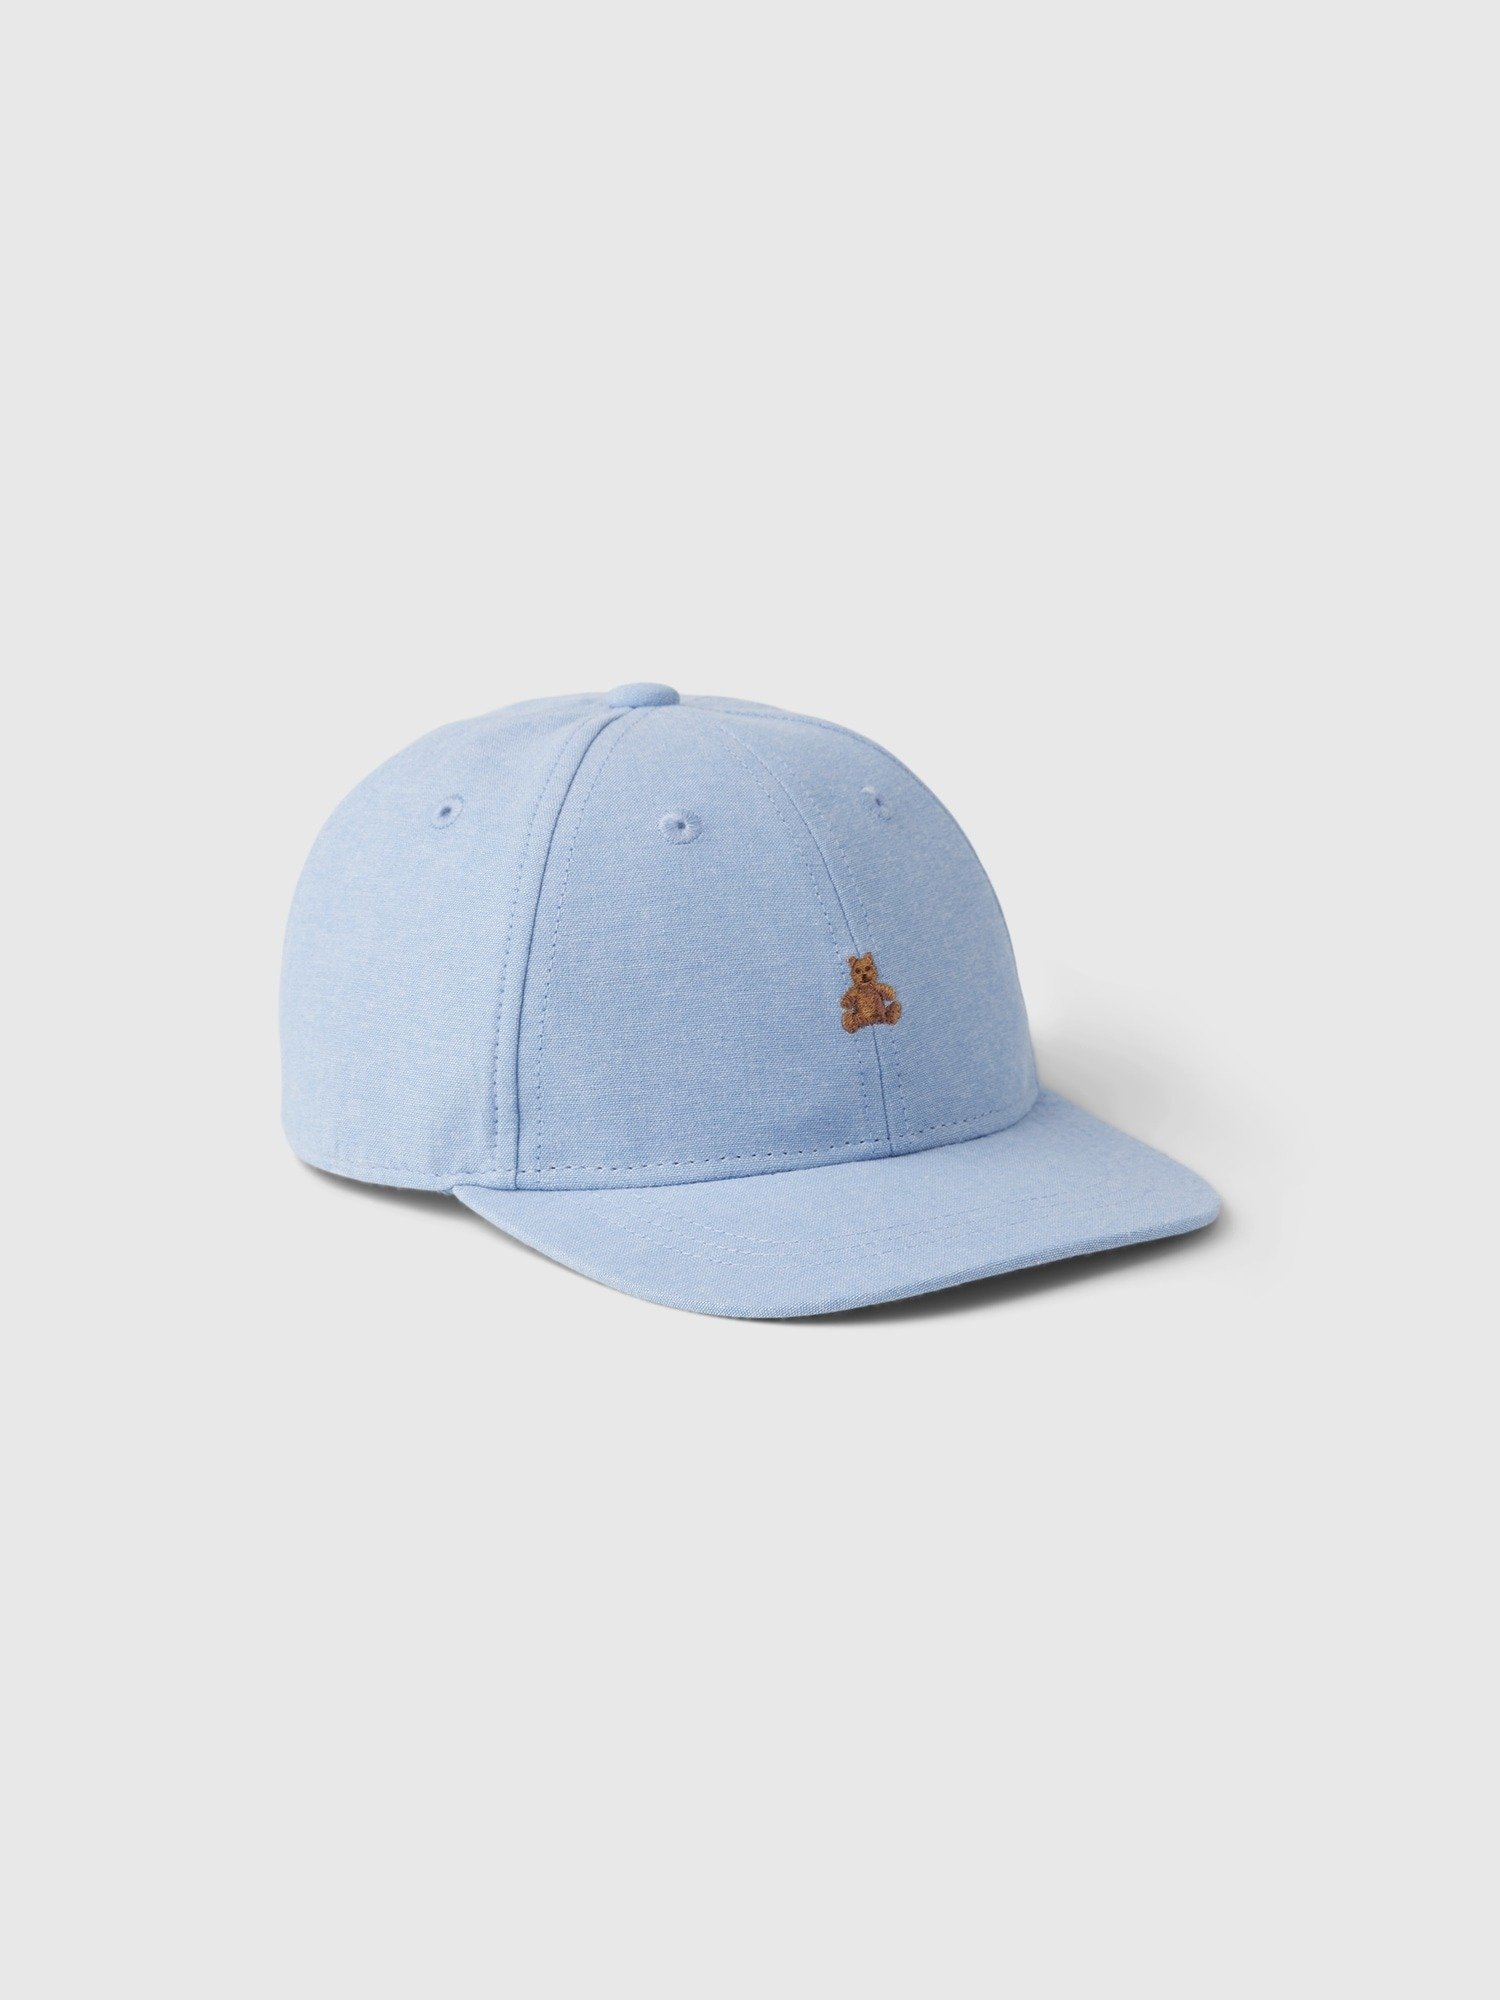 Brannan Bear İşlemeli Beyzbol Şapkası product image